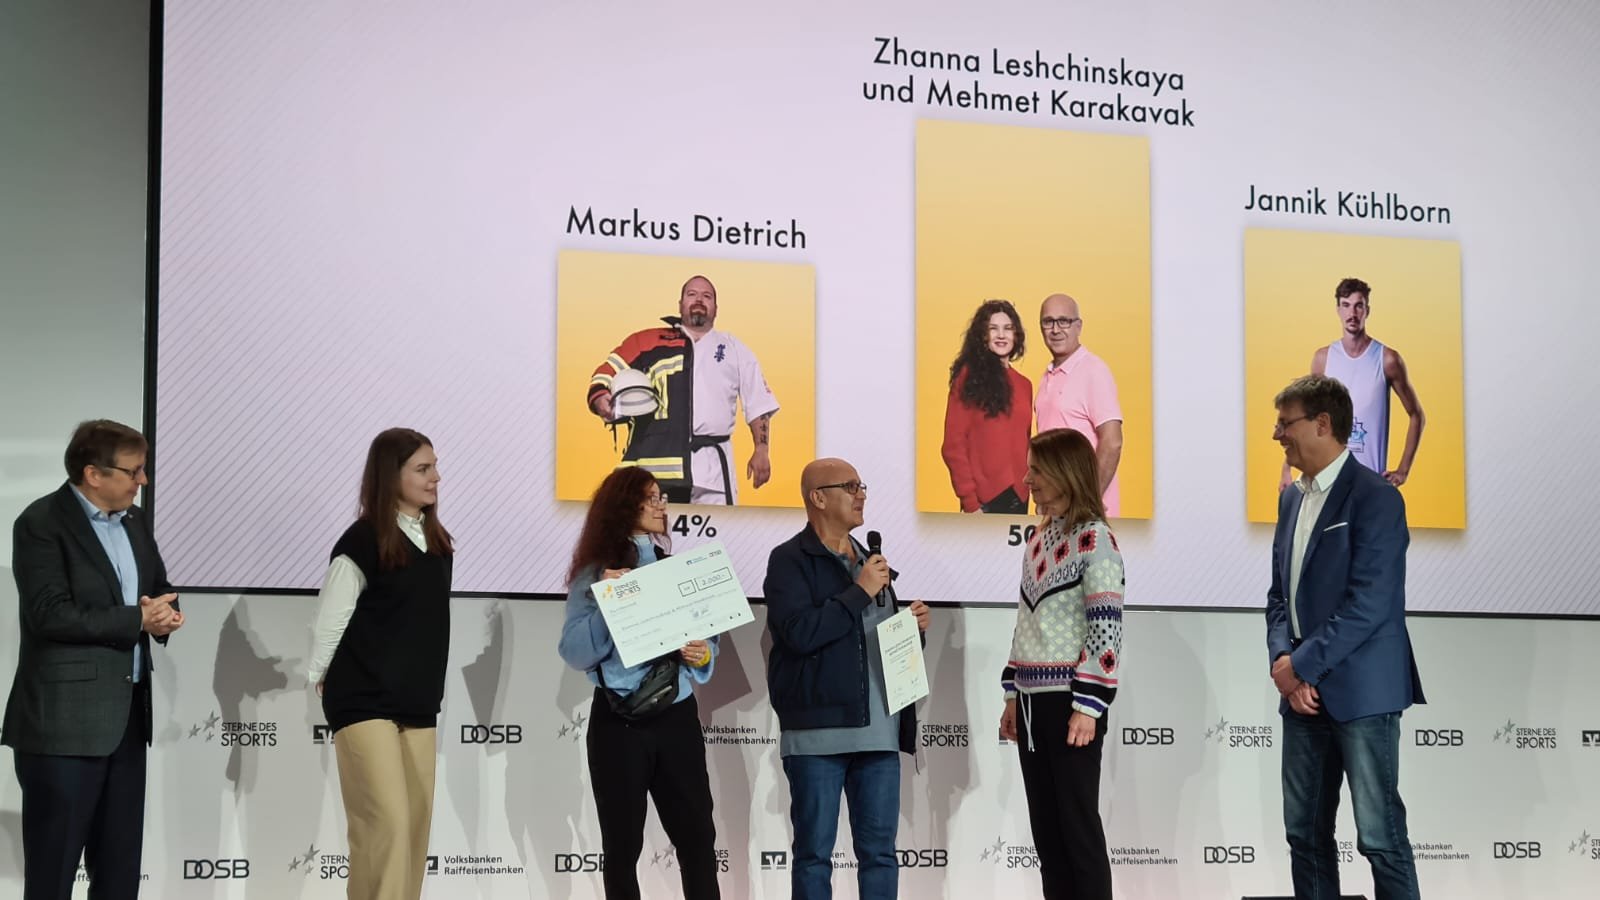 Sterne des Sports 2022 - Der Publikumspreis geht an die beiden EMTVer Zhanna Leshchinskaya und Mehmet Karakavak